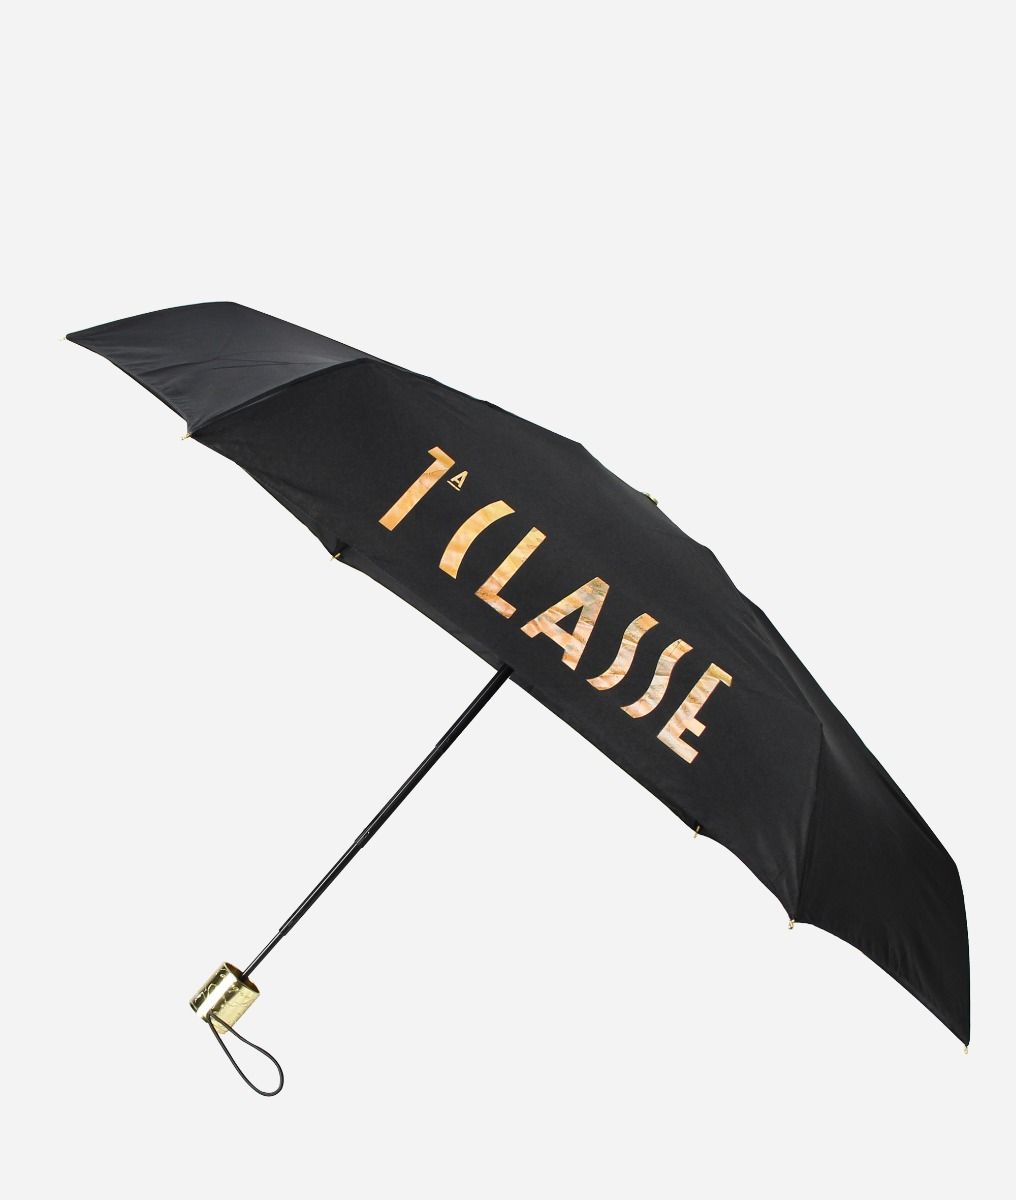 1ᴬ Classe supermini Geo Logo umbrella Black,front